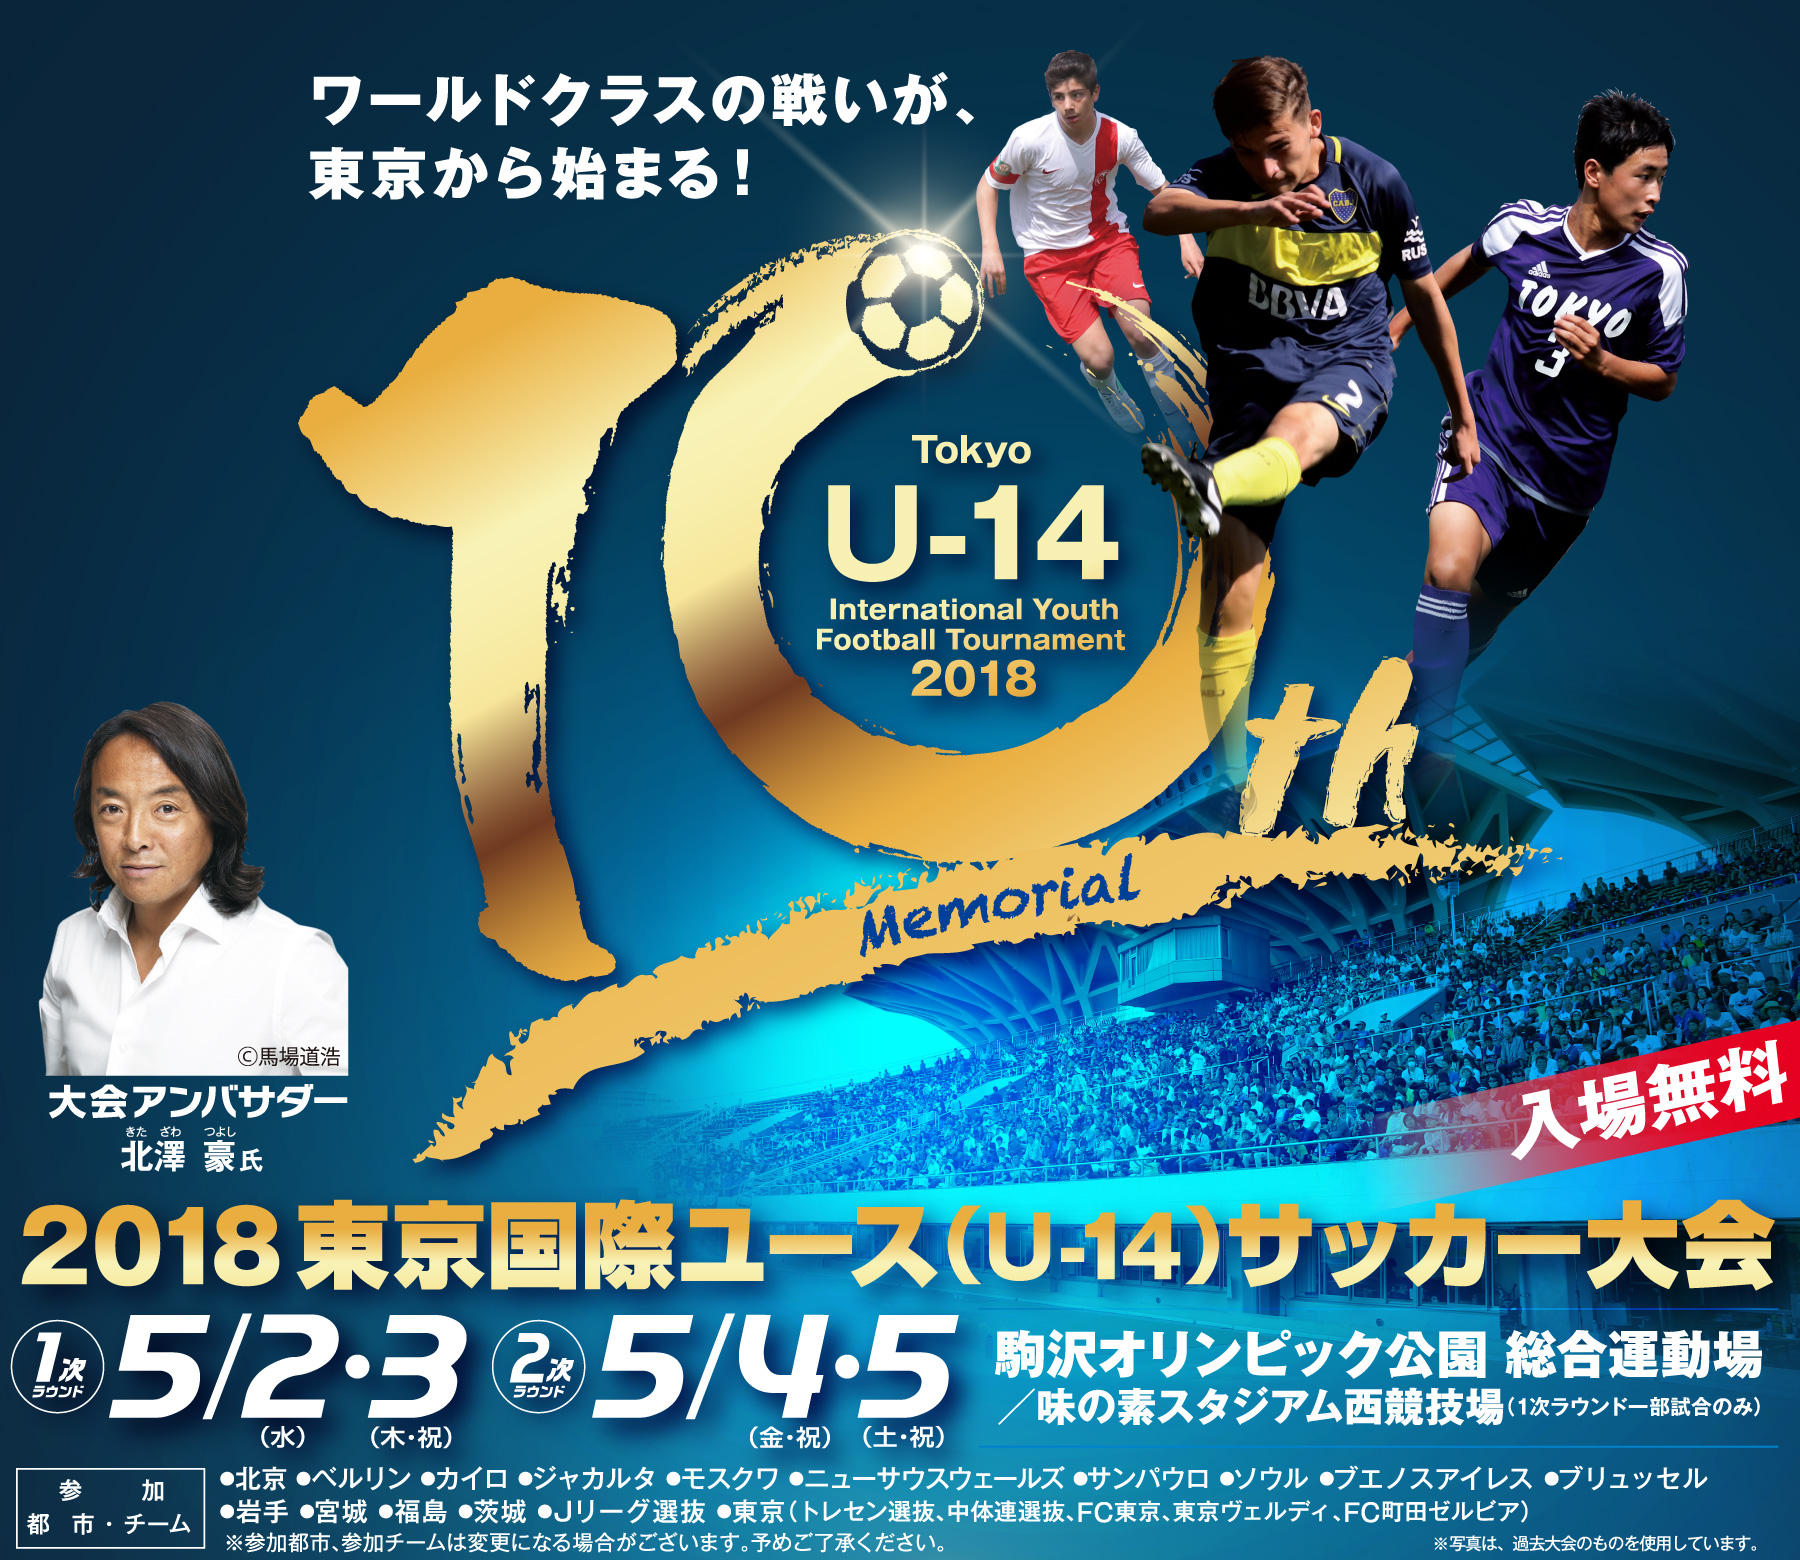 東京国際ユース U 14 サッカー大会の対戦カードが決定 サカイク